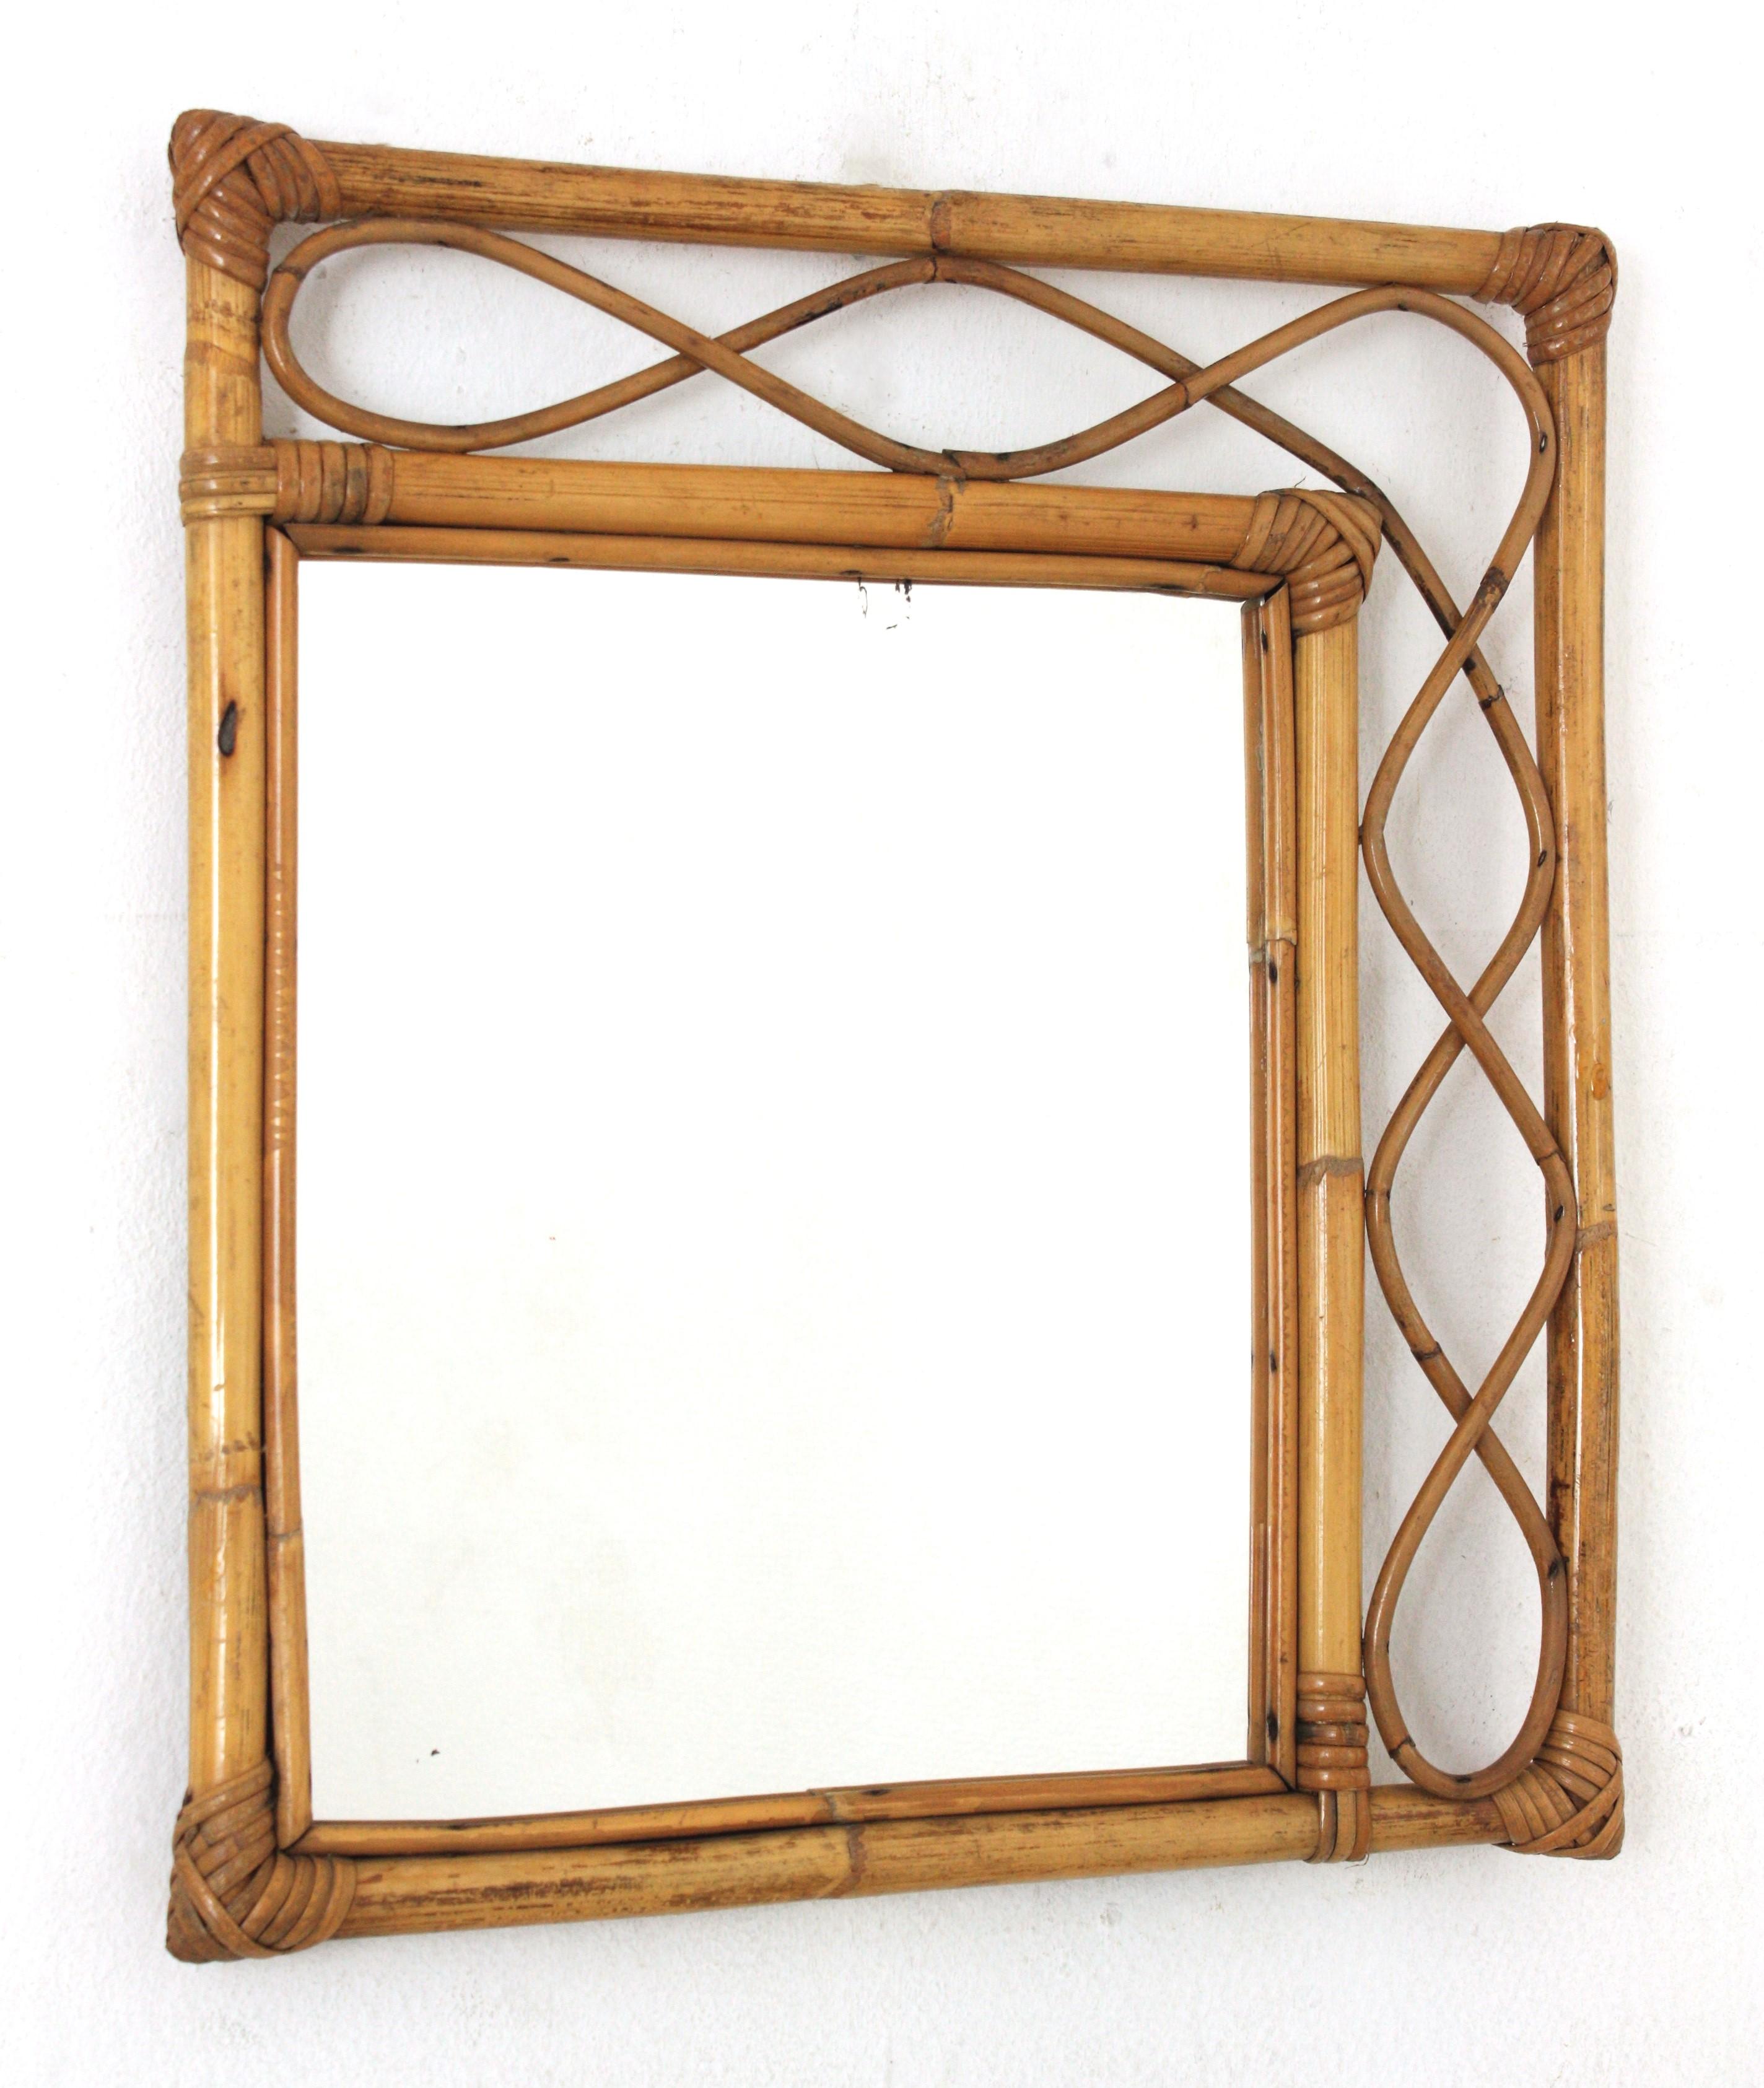 Miroir en bambou et en rotin fabriqué à la main, de style Franco Albini, qui attire le regard. Italie, années 1960.
Ce miroir présente un double cadre rectangulaire en bambou avec des ondulations décoratives en rotin entre les cannes de bambou.
Elle